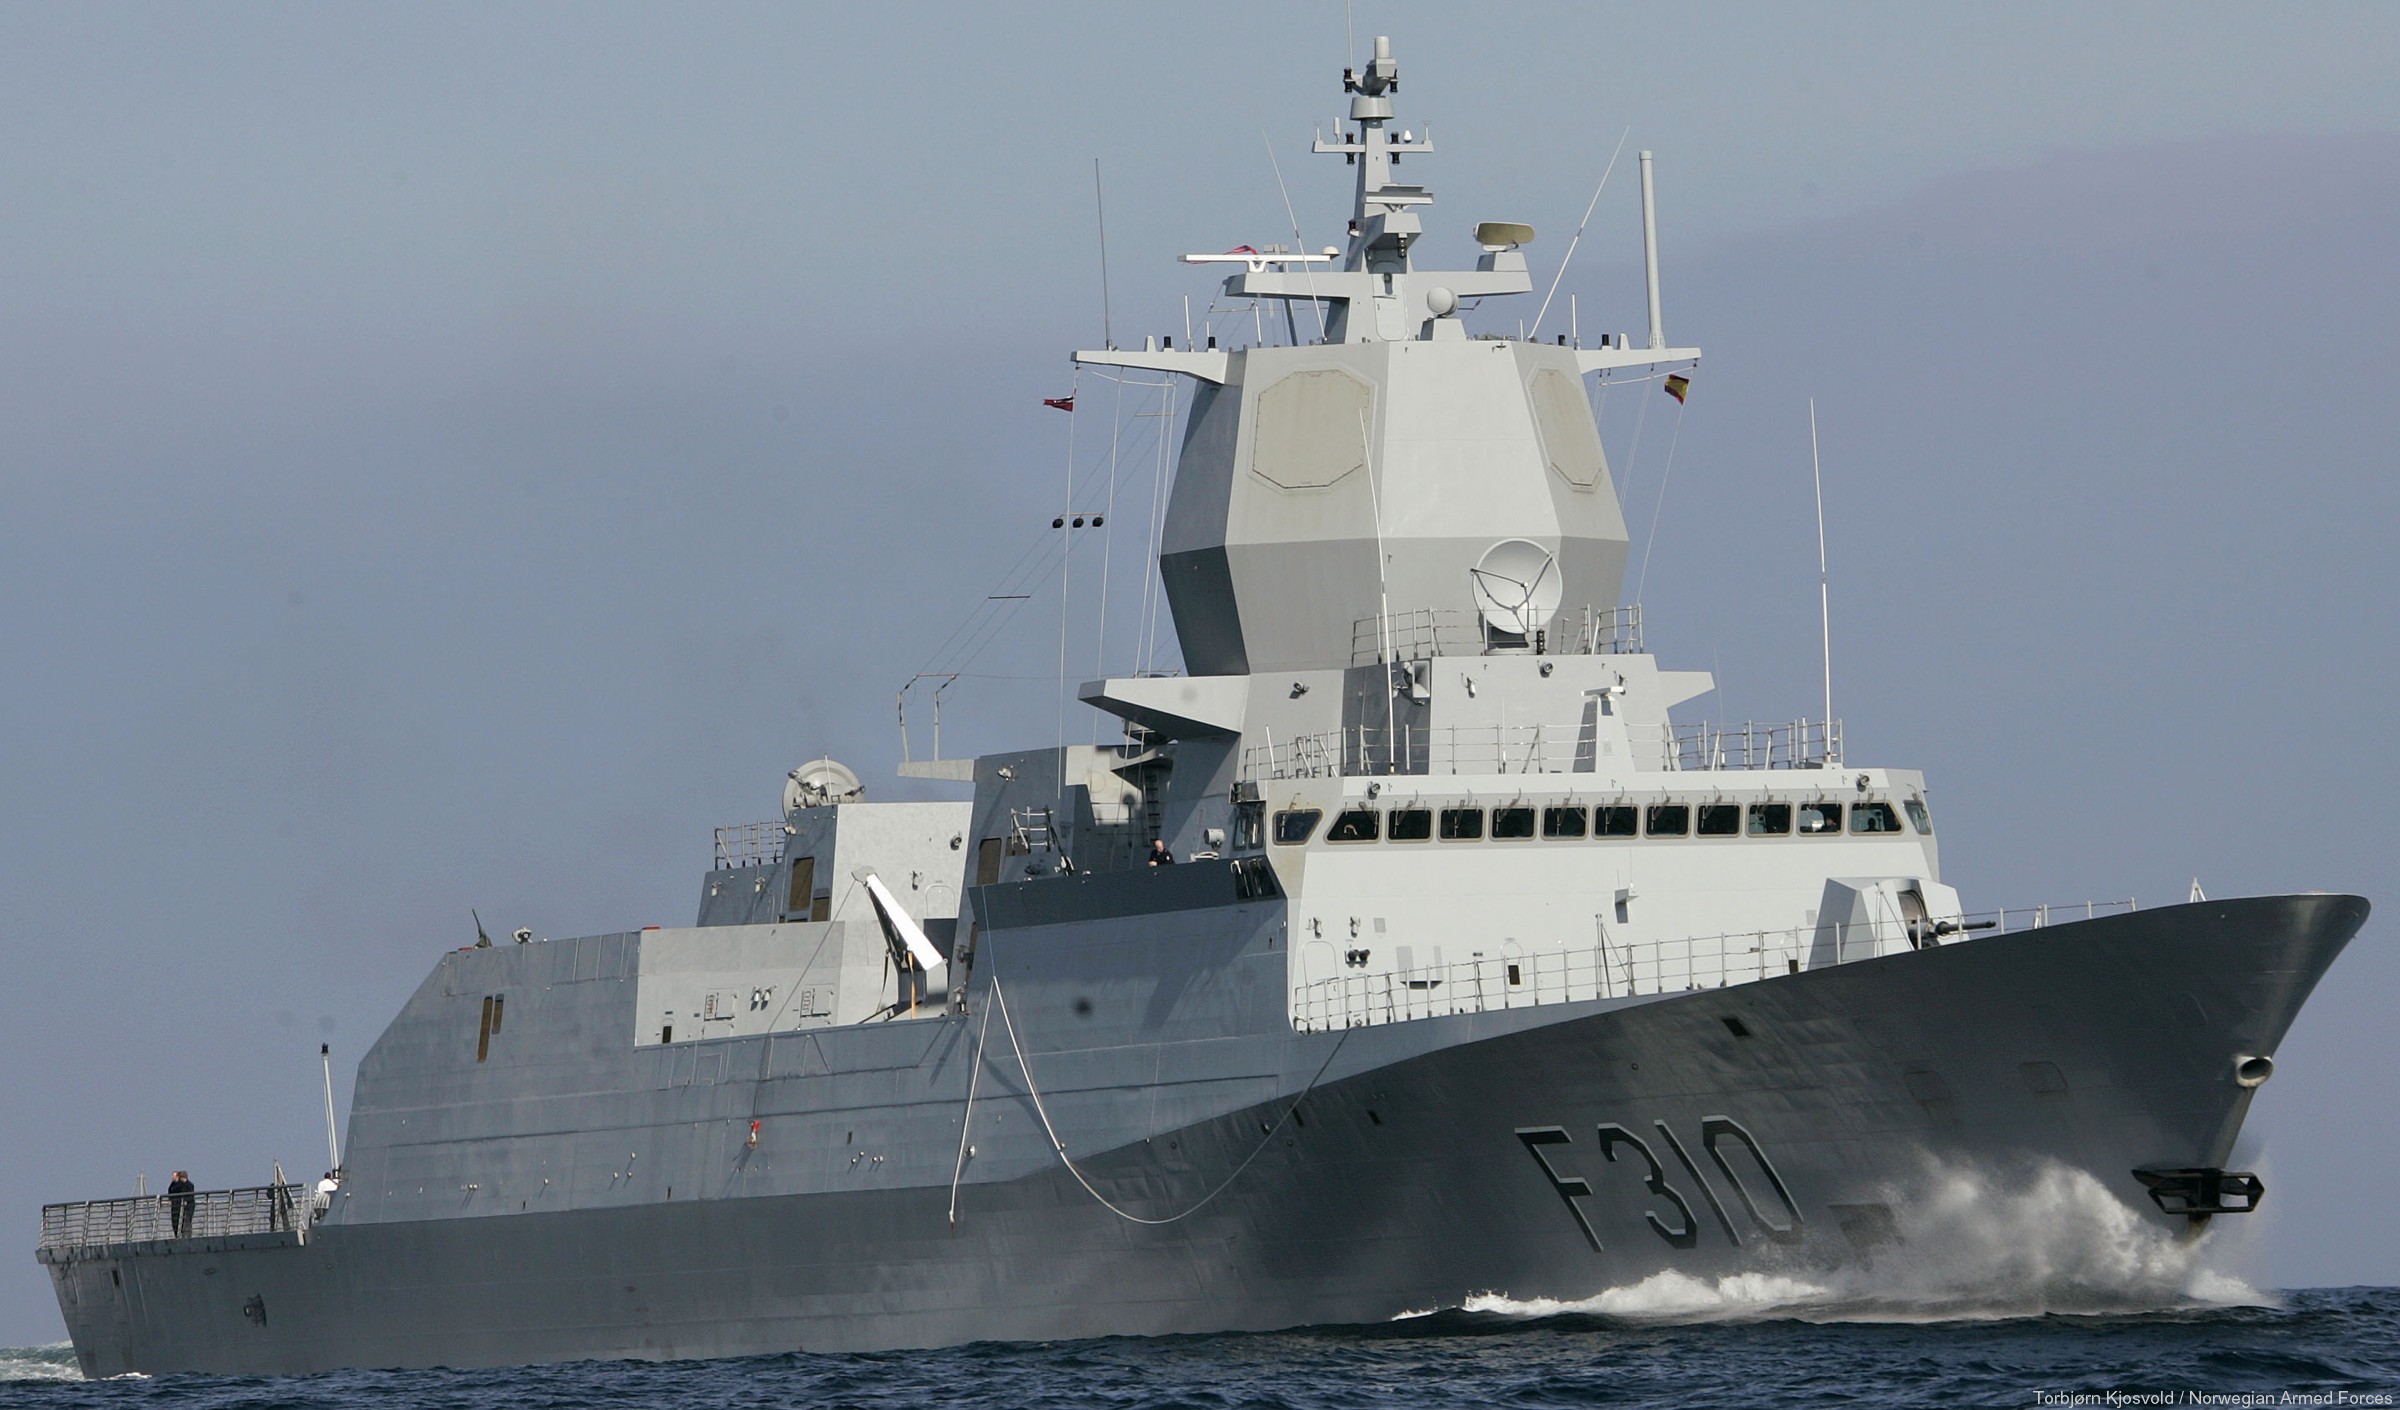 f-310 fridtjof nansen hnoms knm frigate royal norwegian navy sjoforsvaret 68